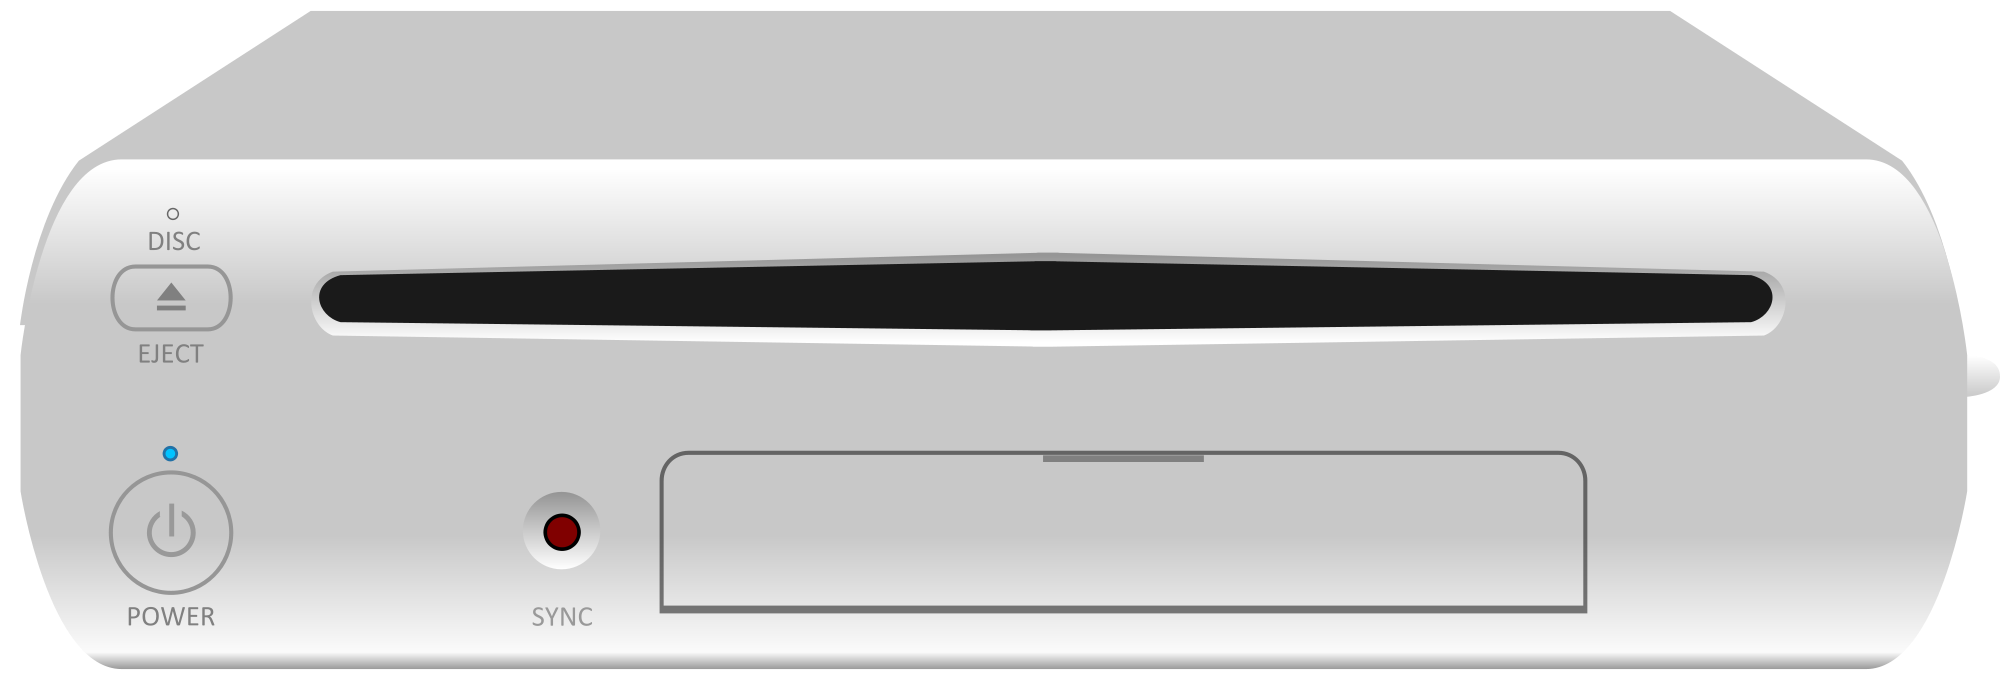 Immagine pubblicata in relazione al seguente contenuto: Conferme sulla data di lancio della console Nintendo Wii U | Nome immagine: news16960_1.png